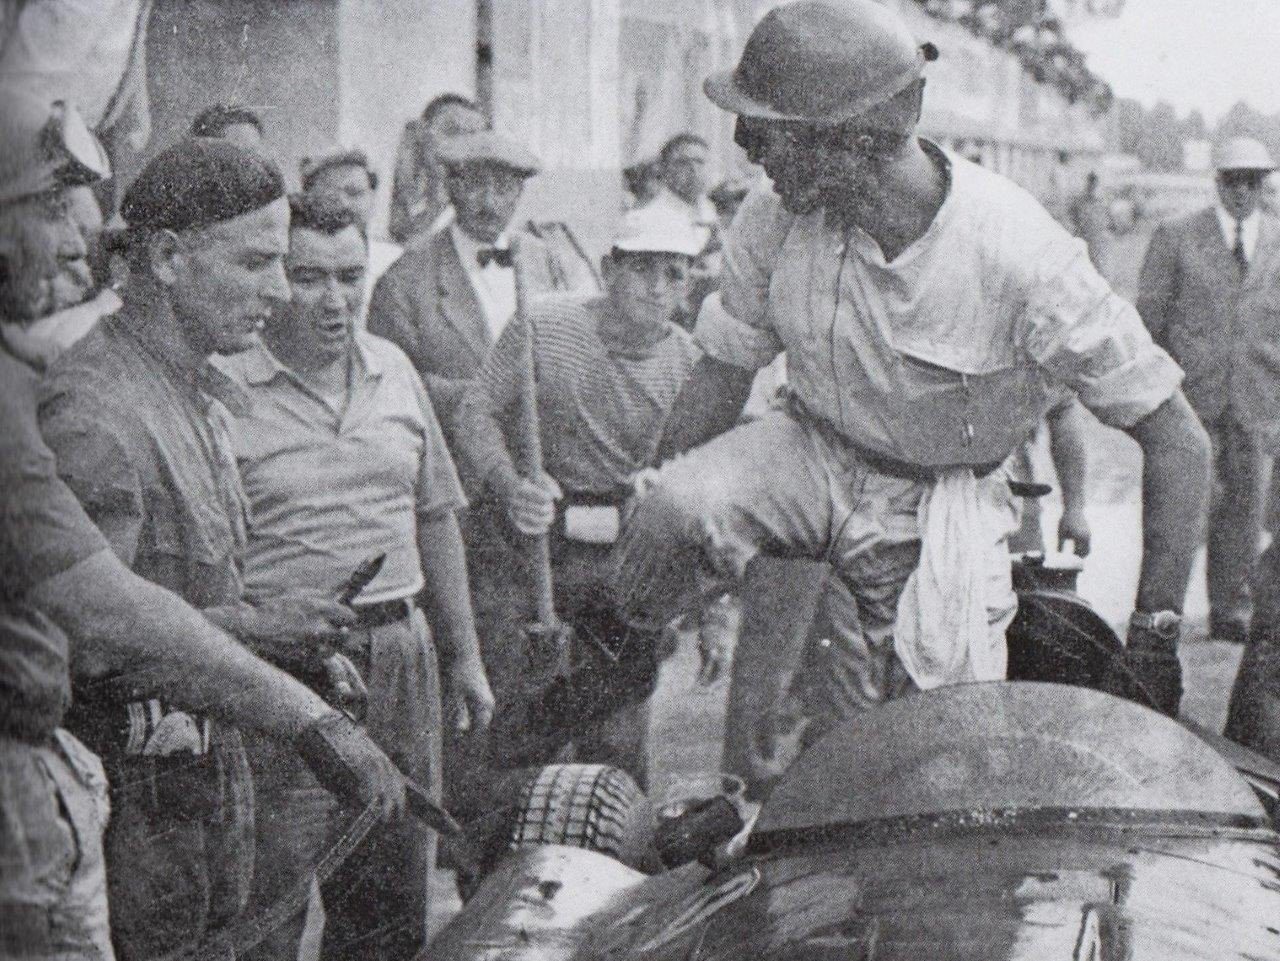 Peter Collins laissant sa place à Fangio - Monza 1956 @ DR